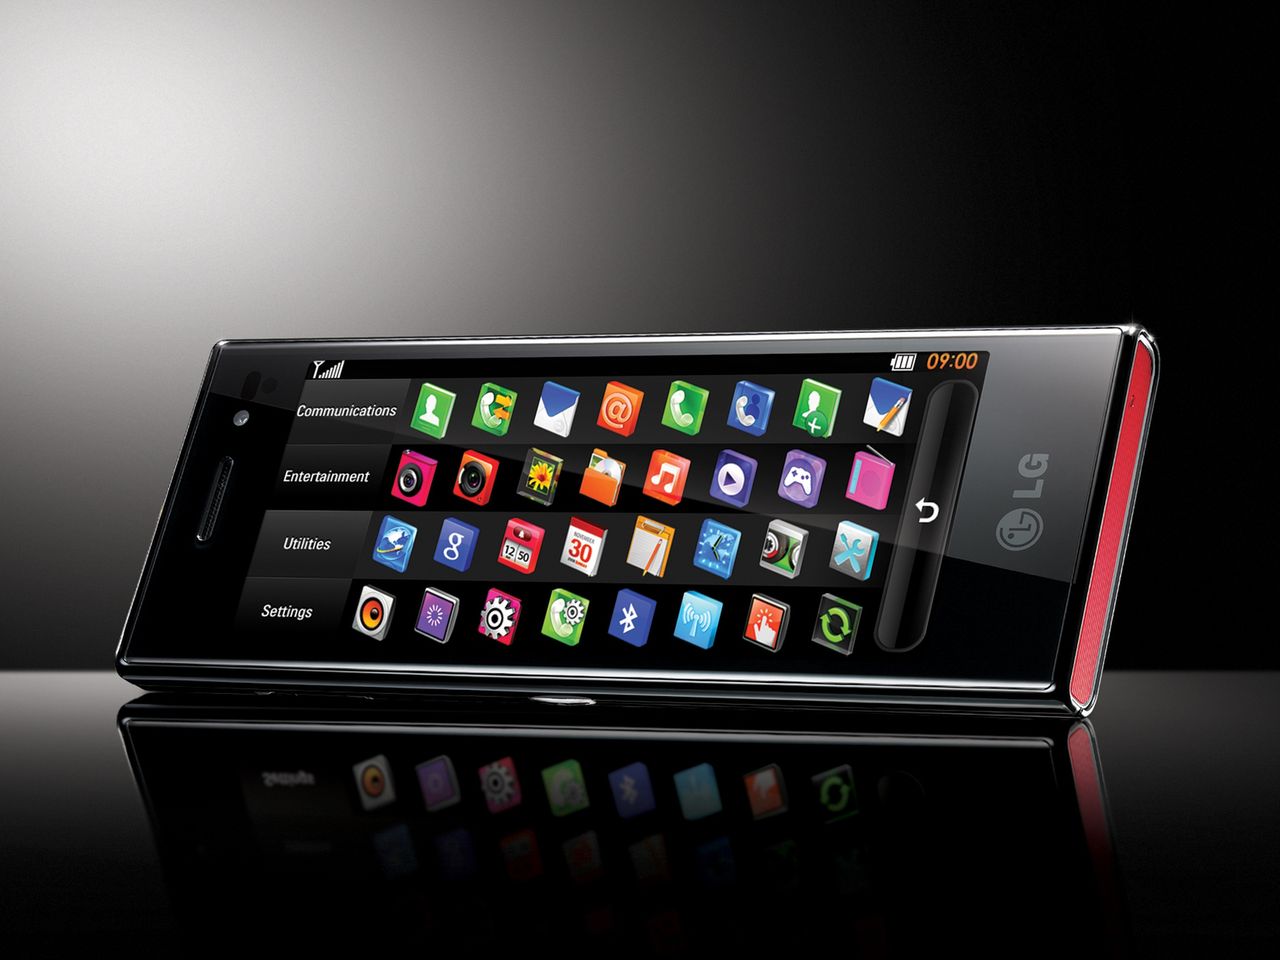 LG BL40 New Chocolate to telefon, który miał zachwycać ekranem 21:9 [Podróż w czasie]